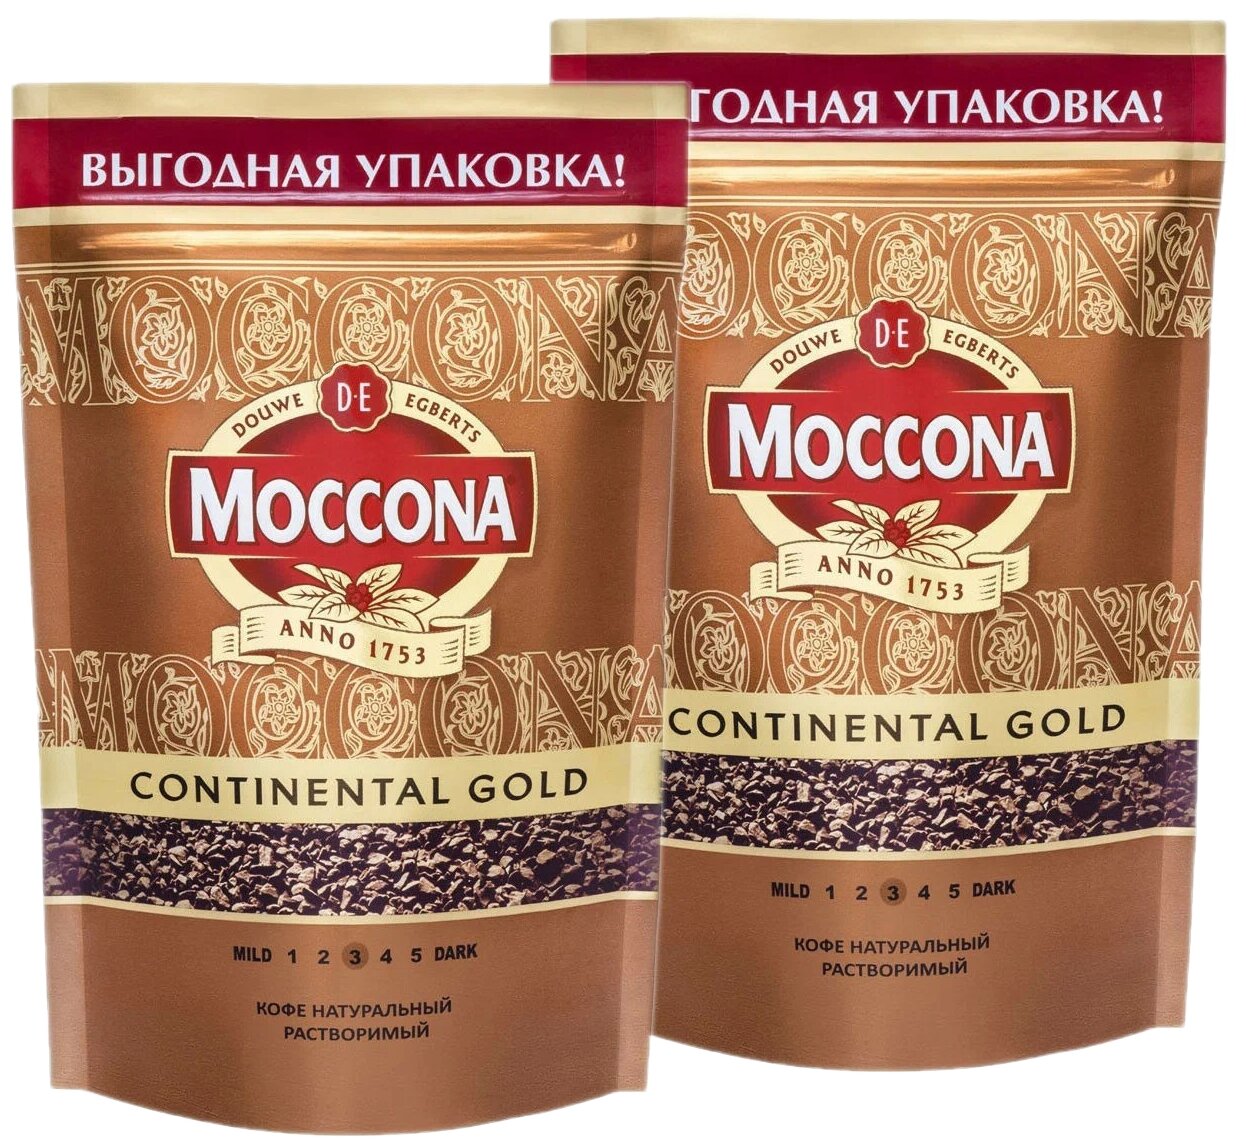 Кофе Moccona Continental Gold (Континентал Голд), растворимый, в пакете, 2x75г - фотография № 1